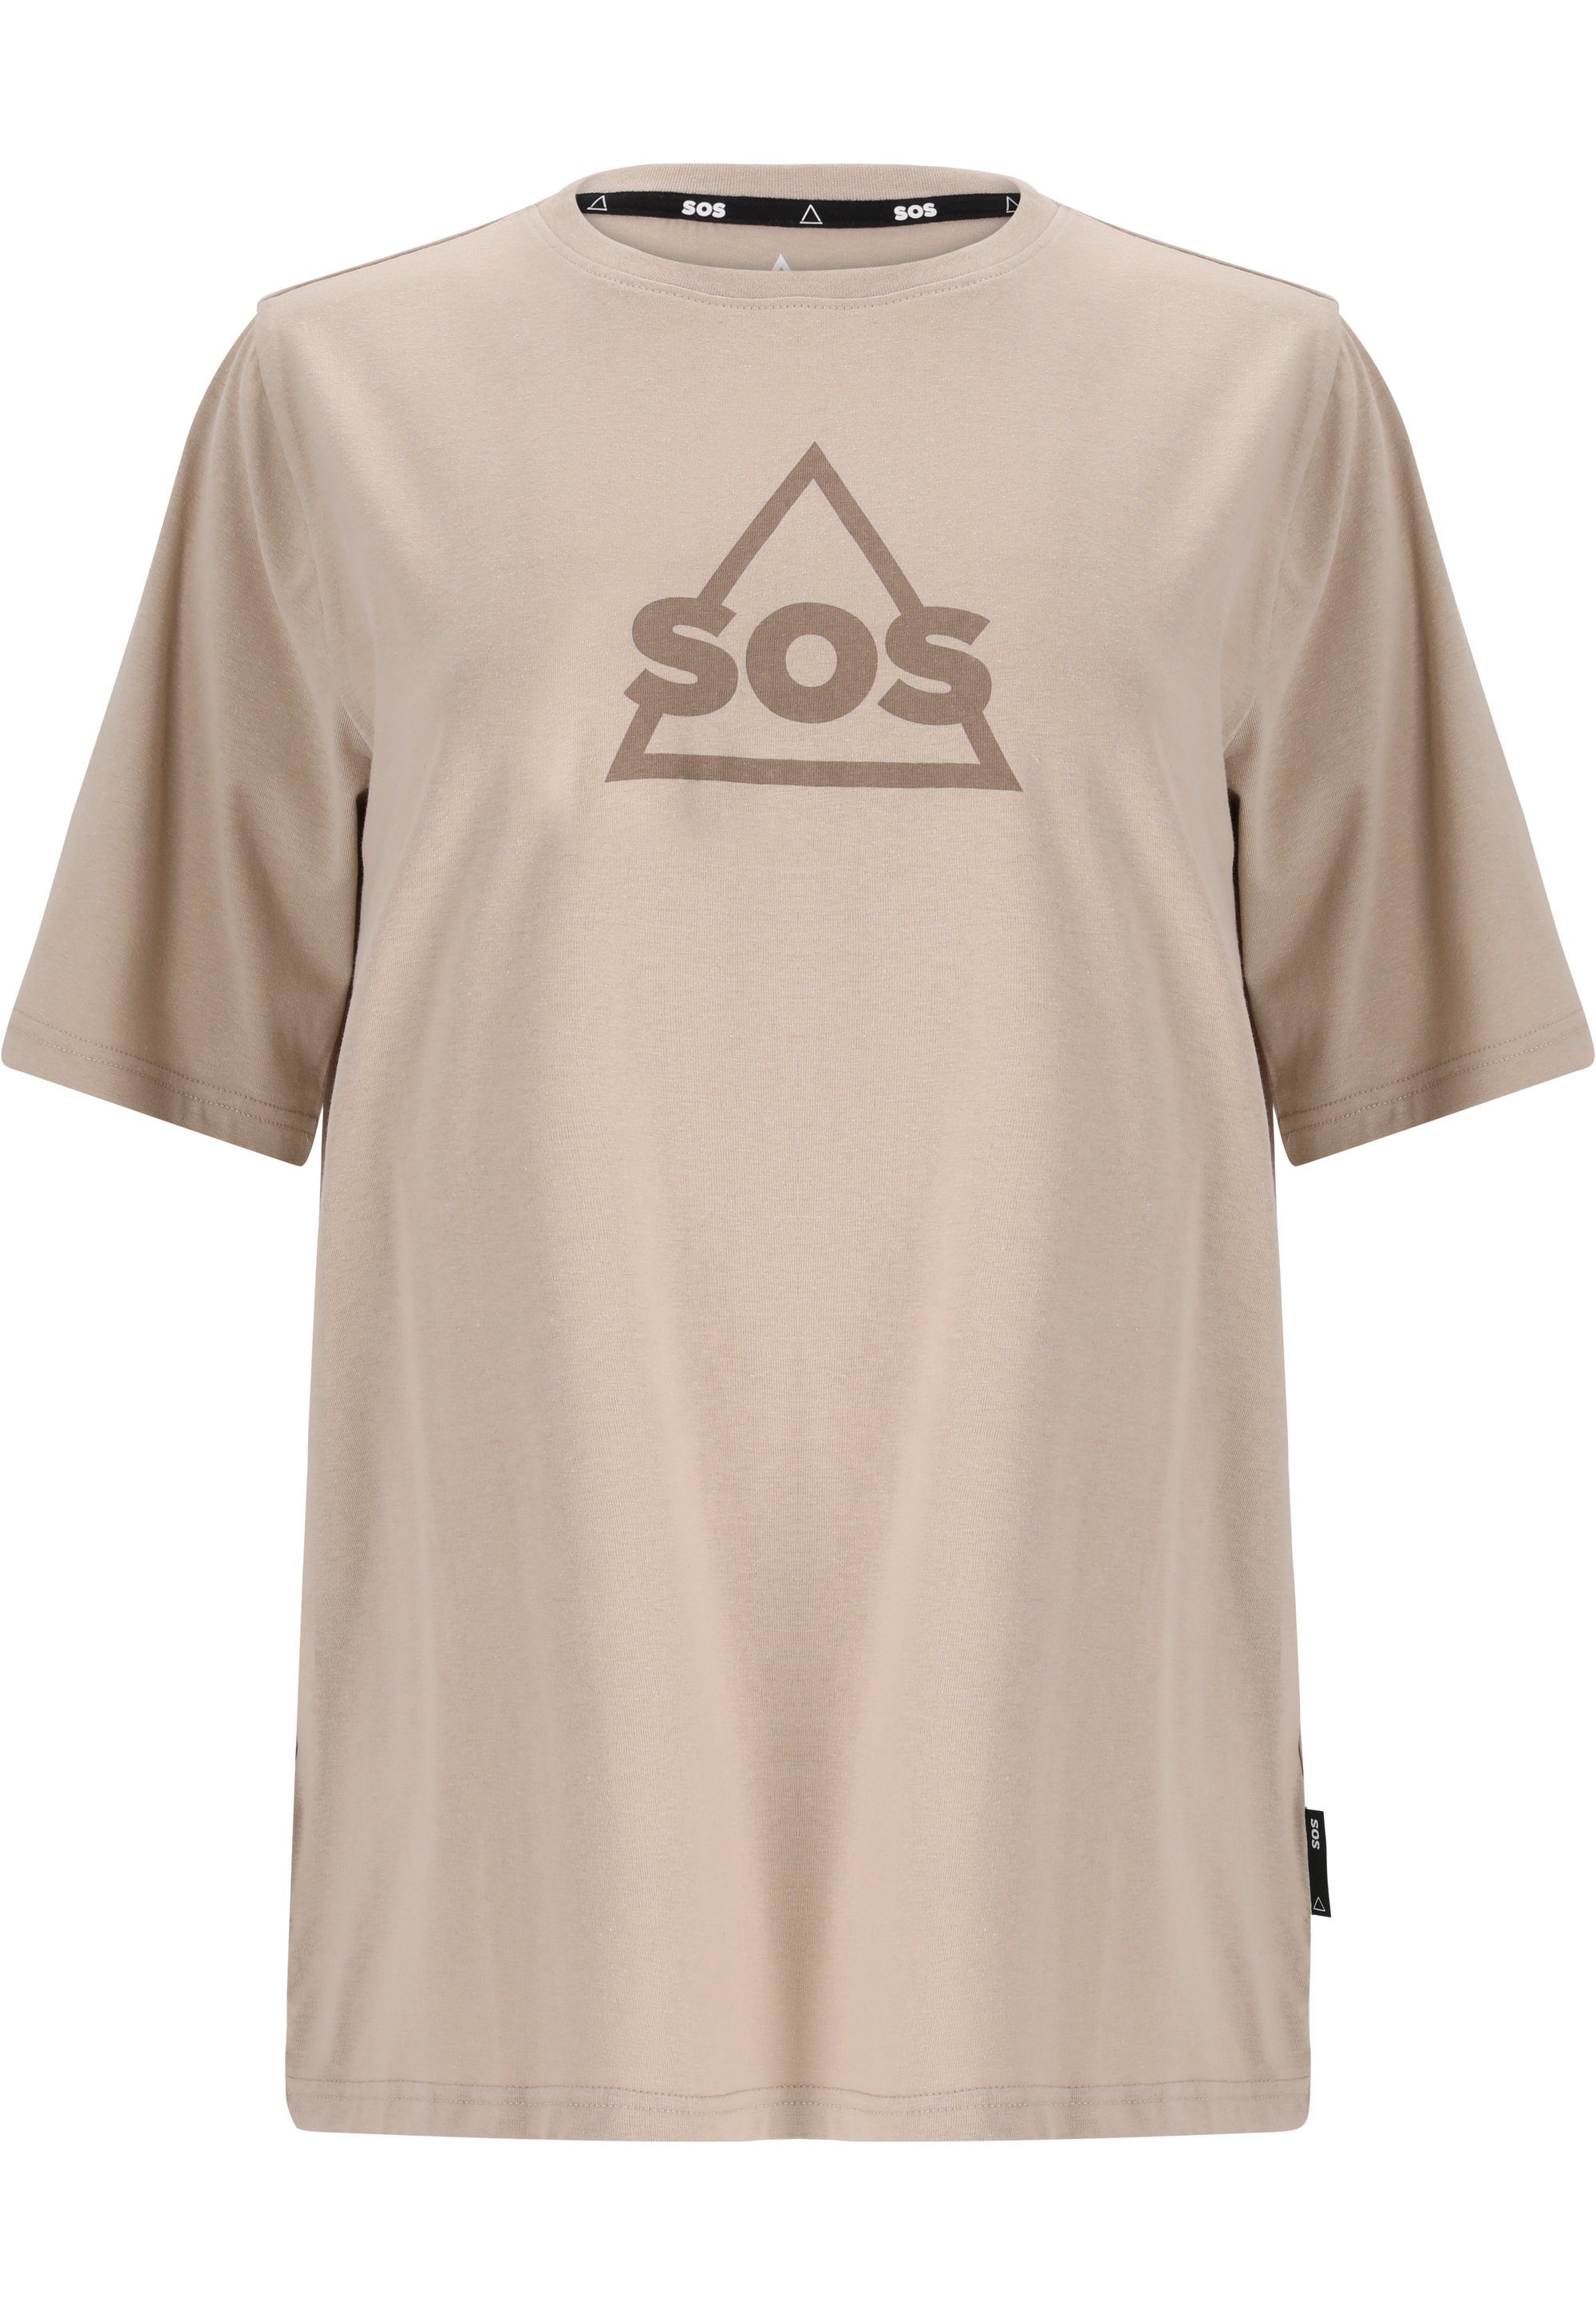 SOS Markenlogo auf taupe Funktionsshirt Front mit trendigem Kvitfjell der